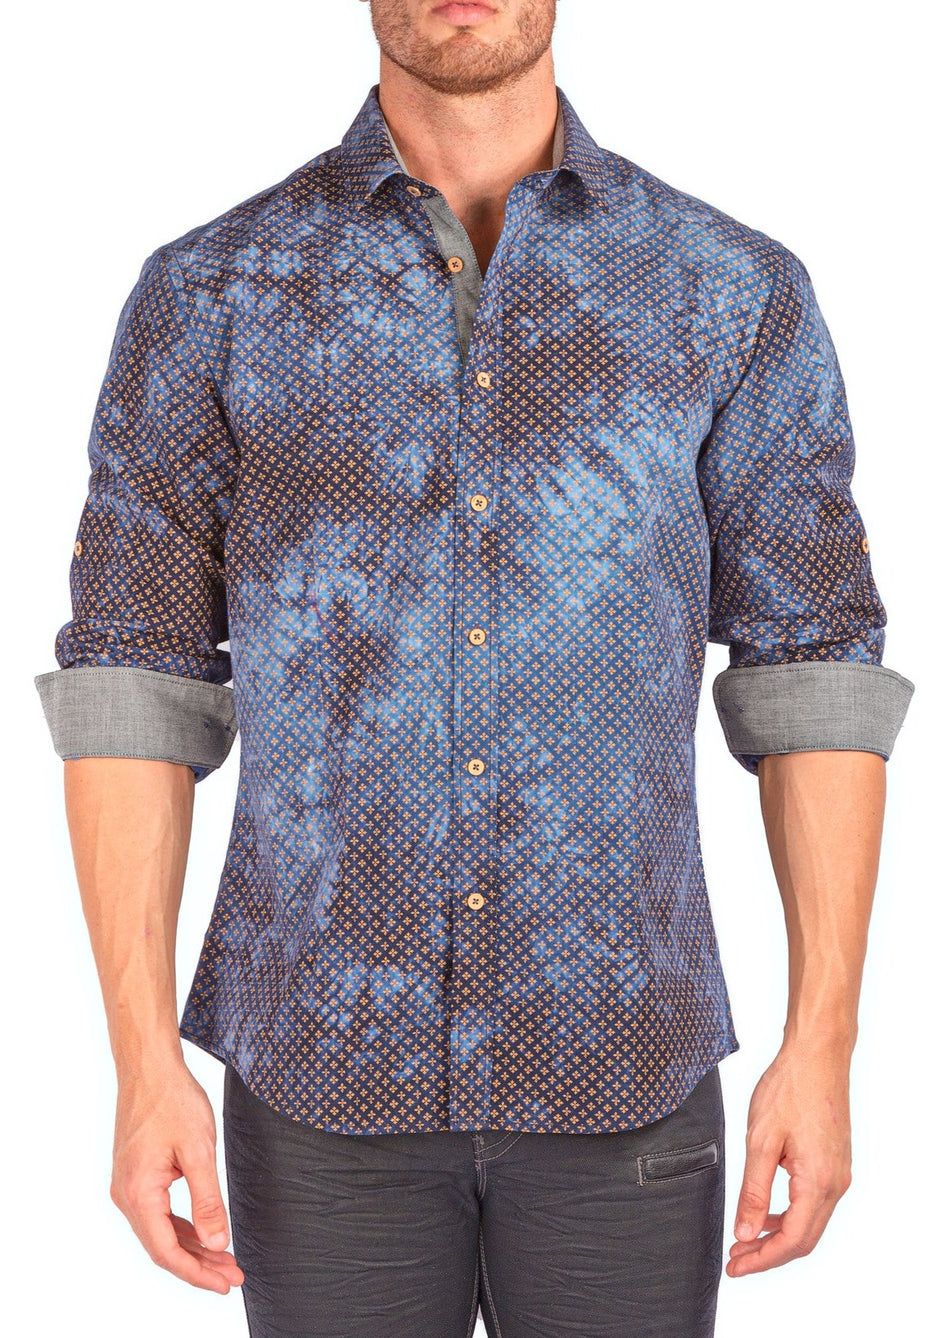 Men's Blue Printed Button Up Long Sleeve Dress Shirt